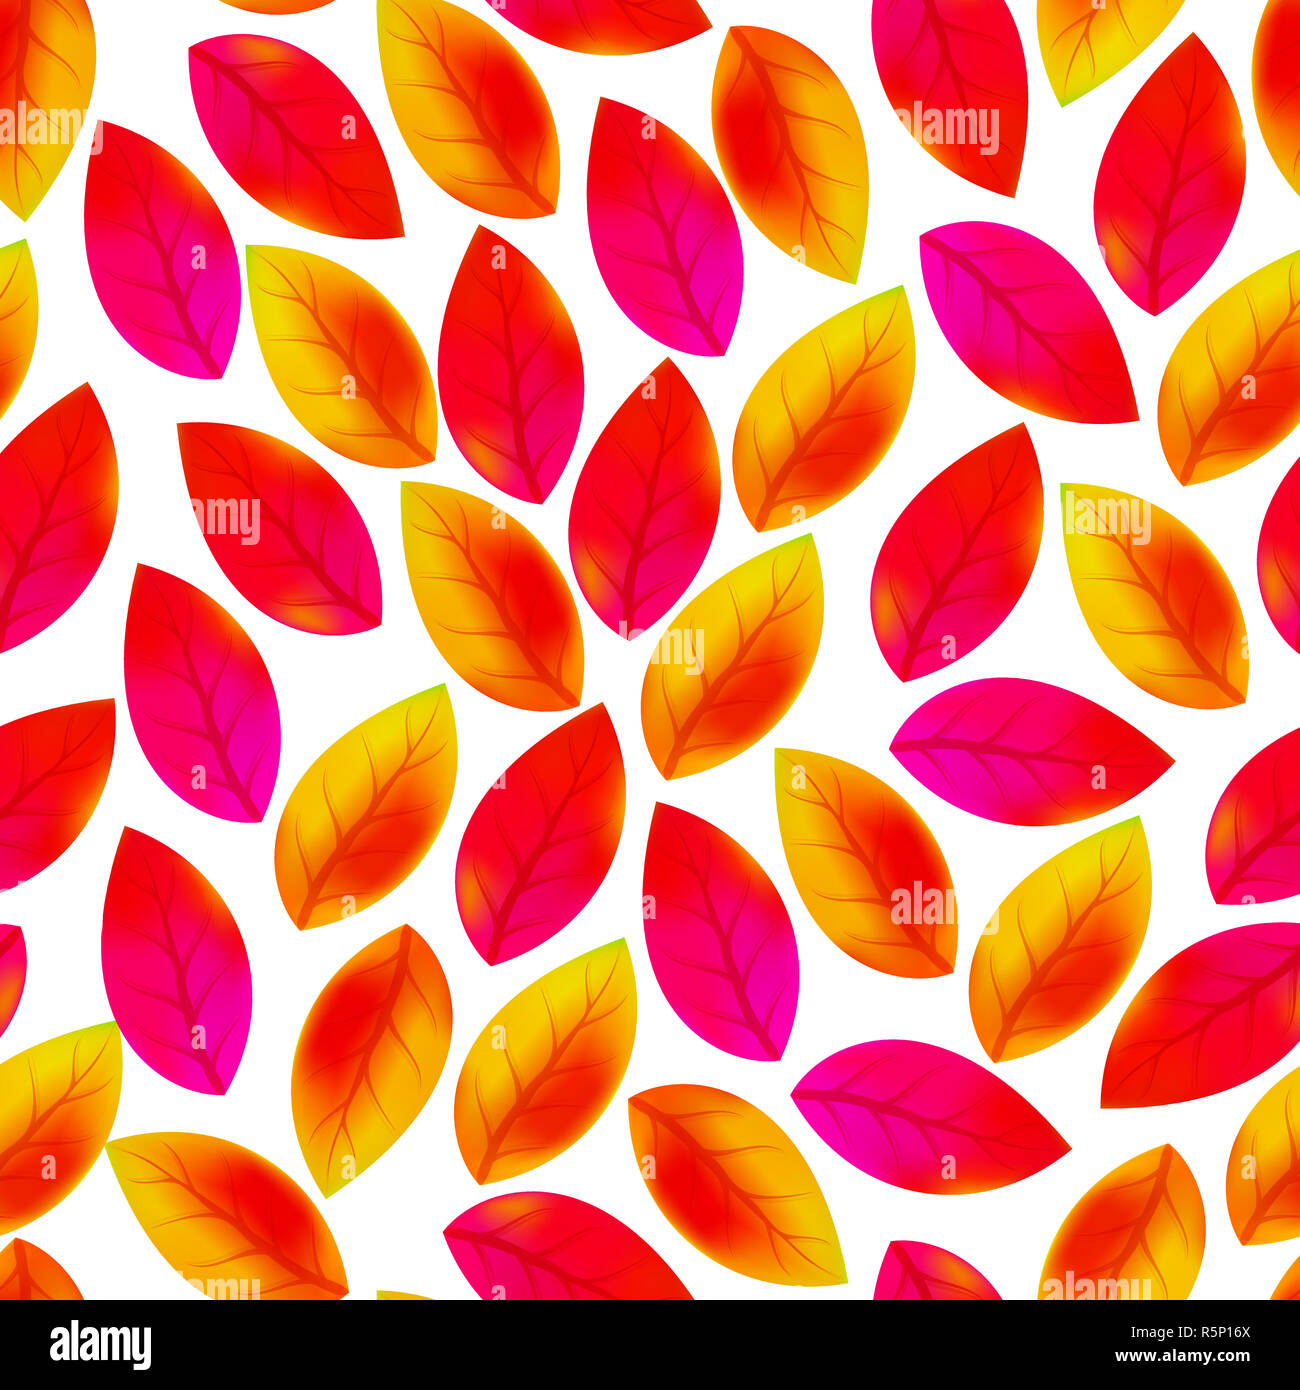 Transparente avec motif floral feuilles tombées. De l'automne. La chute des feuilles. Contexte artistique coloré Banque D'Images